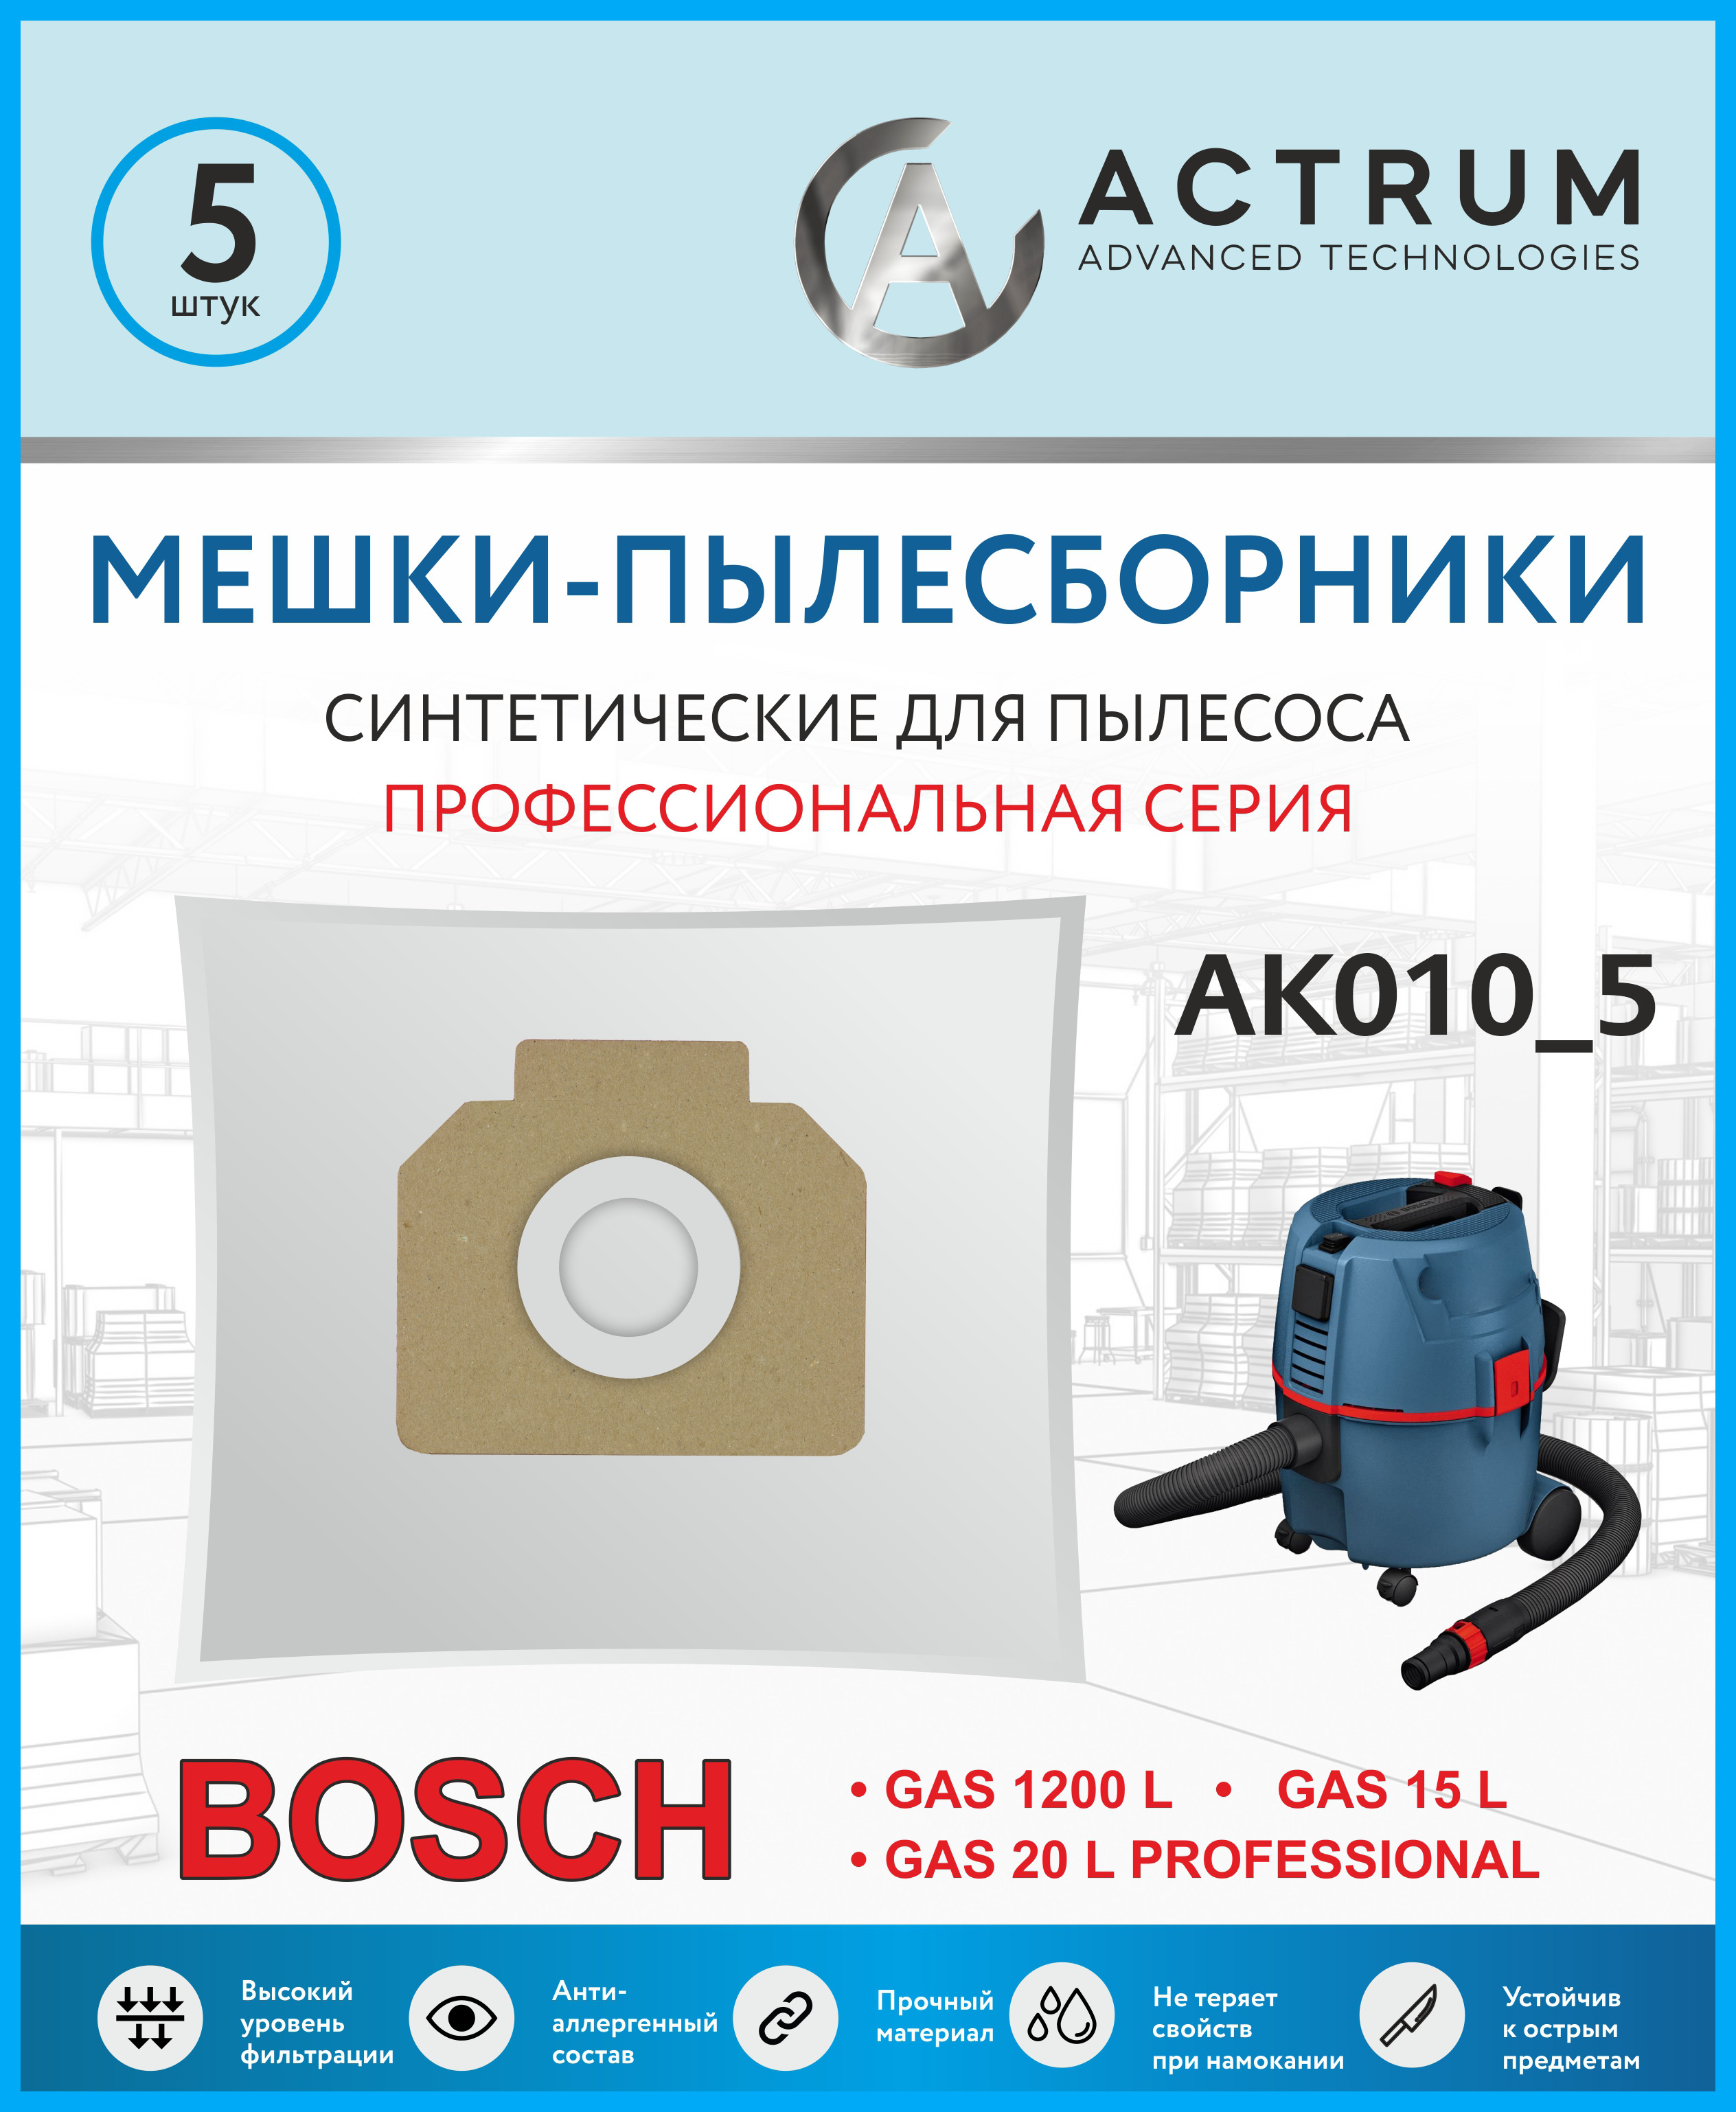 Пылесборник ACTRUM AK010_5 пылесборник ак010m для промышленных пылесосов arnica bosch hako wetrok